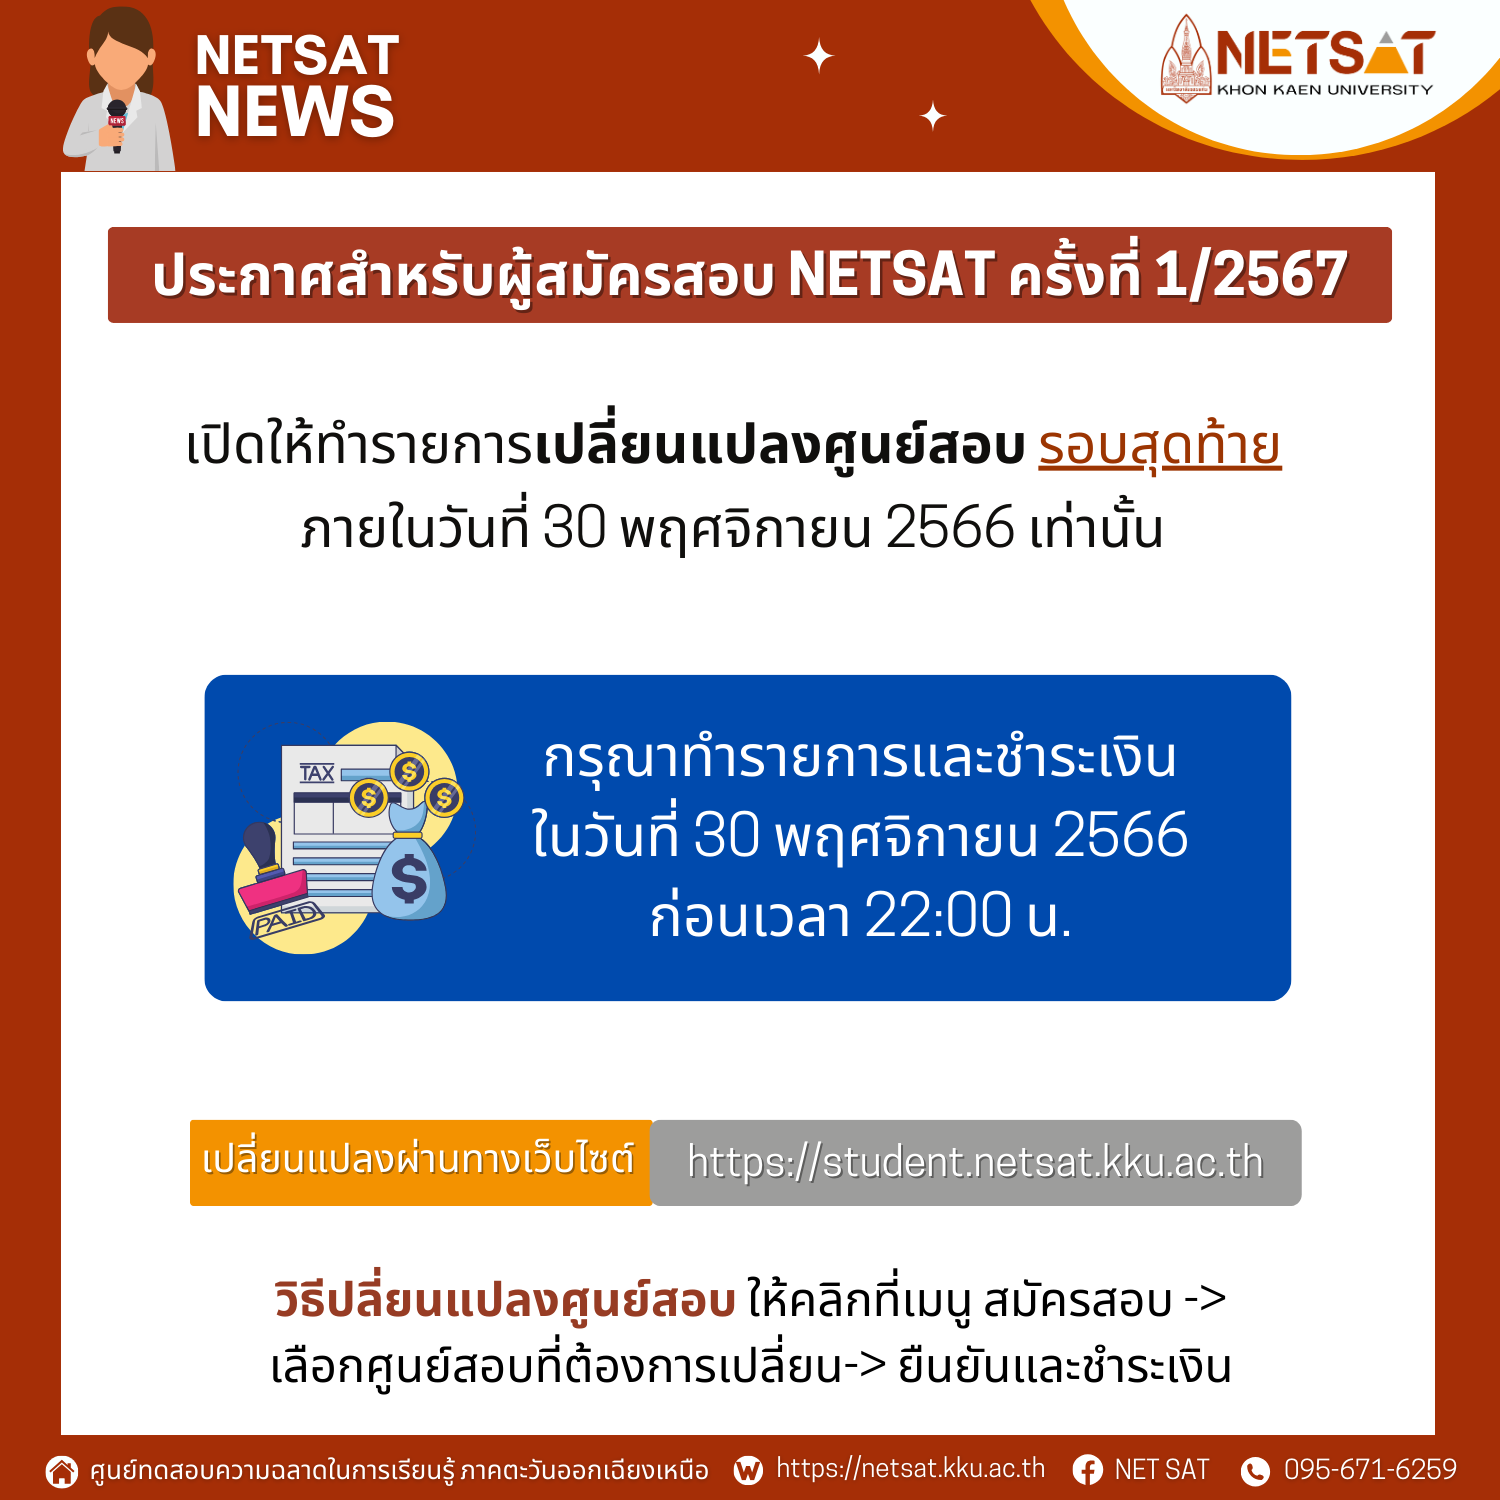 NETSAT เปิดให้ทำรายการเปลี่ยนแปลงศูนย์สอบ รอบสุดท้าย